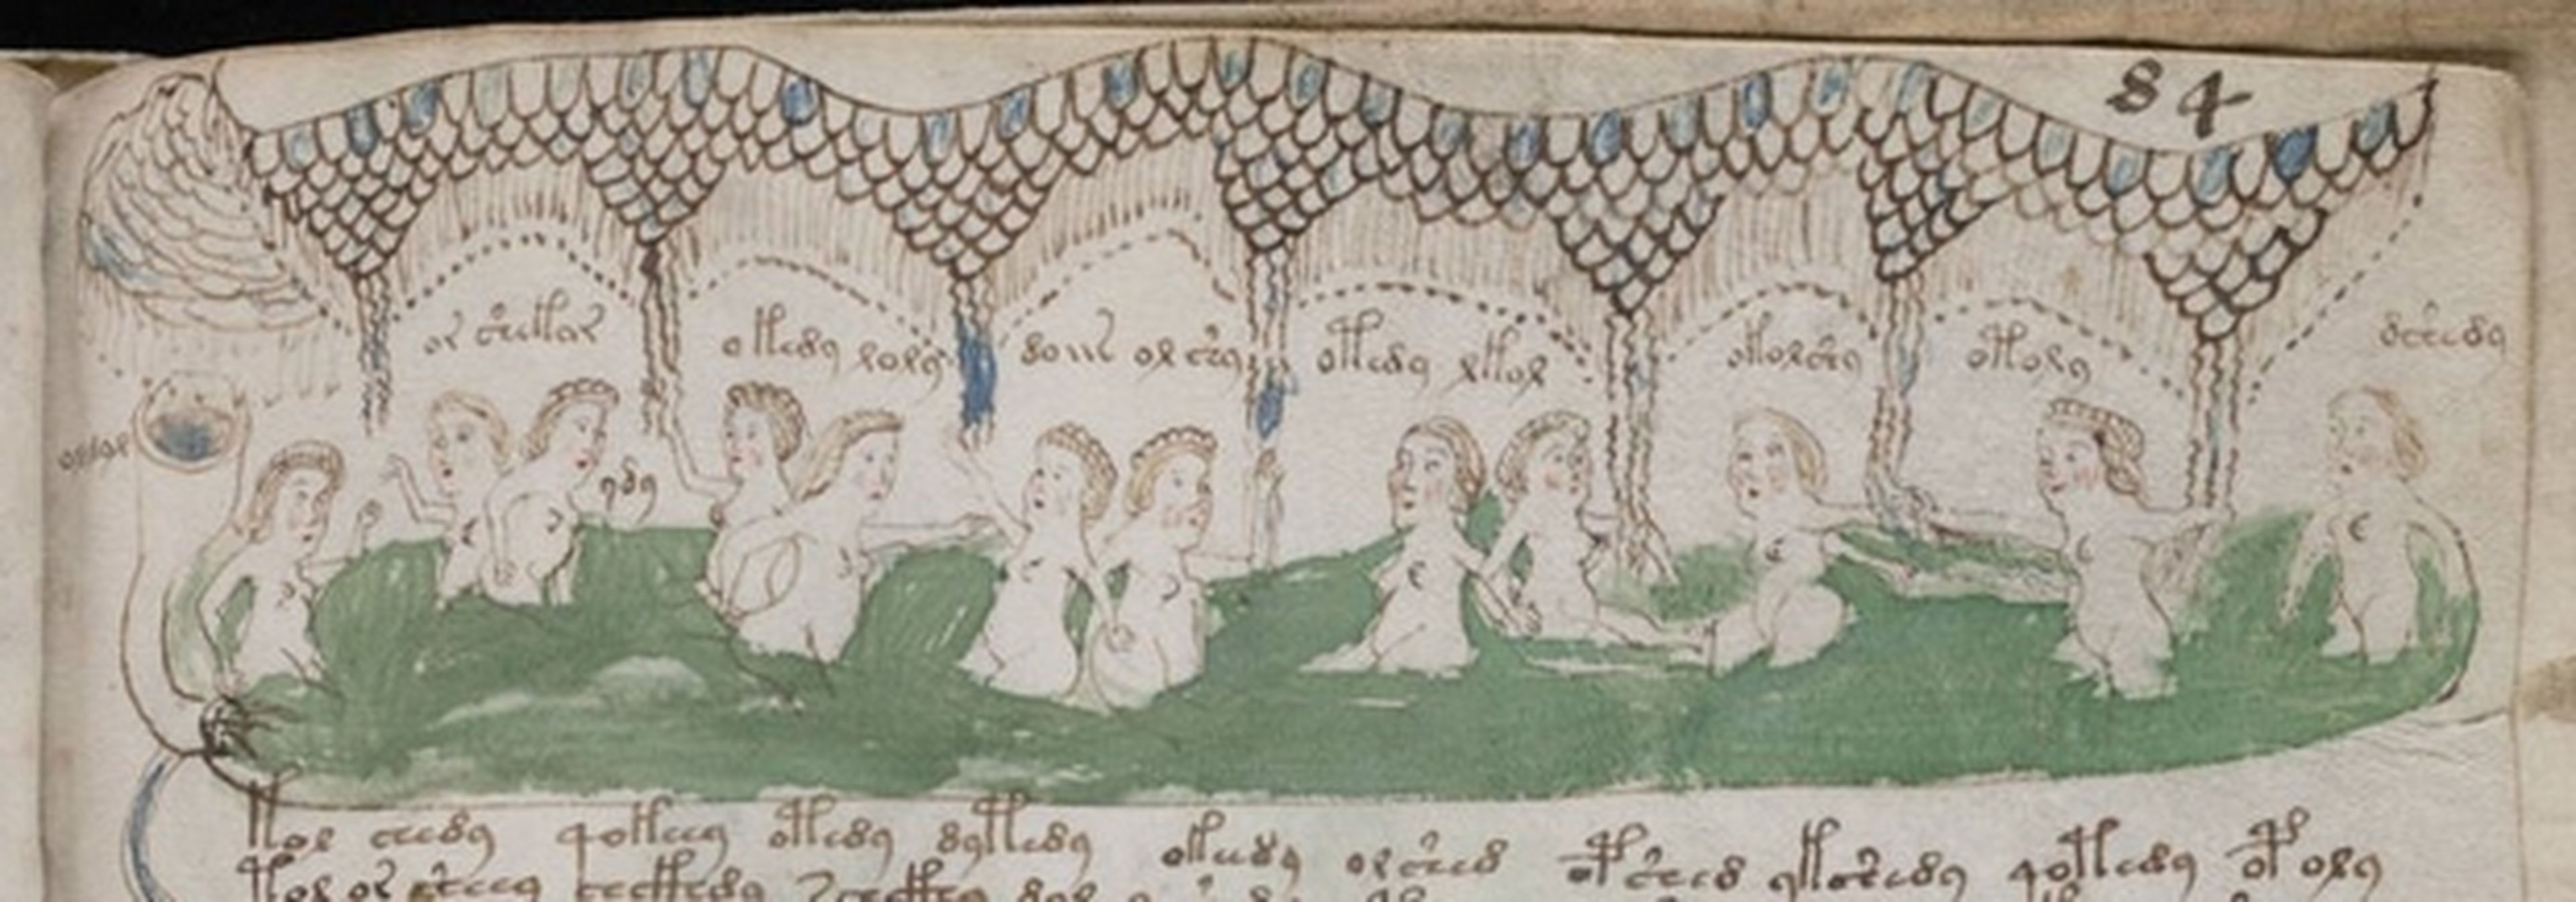 138691 codice voynich libro mas raro mundo copiara burgos - El códice Voynich, el libro más raro del mundo, se copiará en Burgos